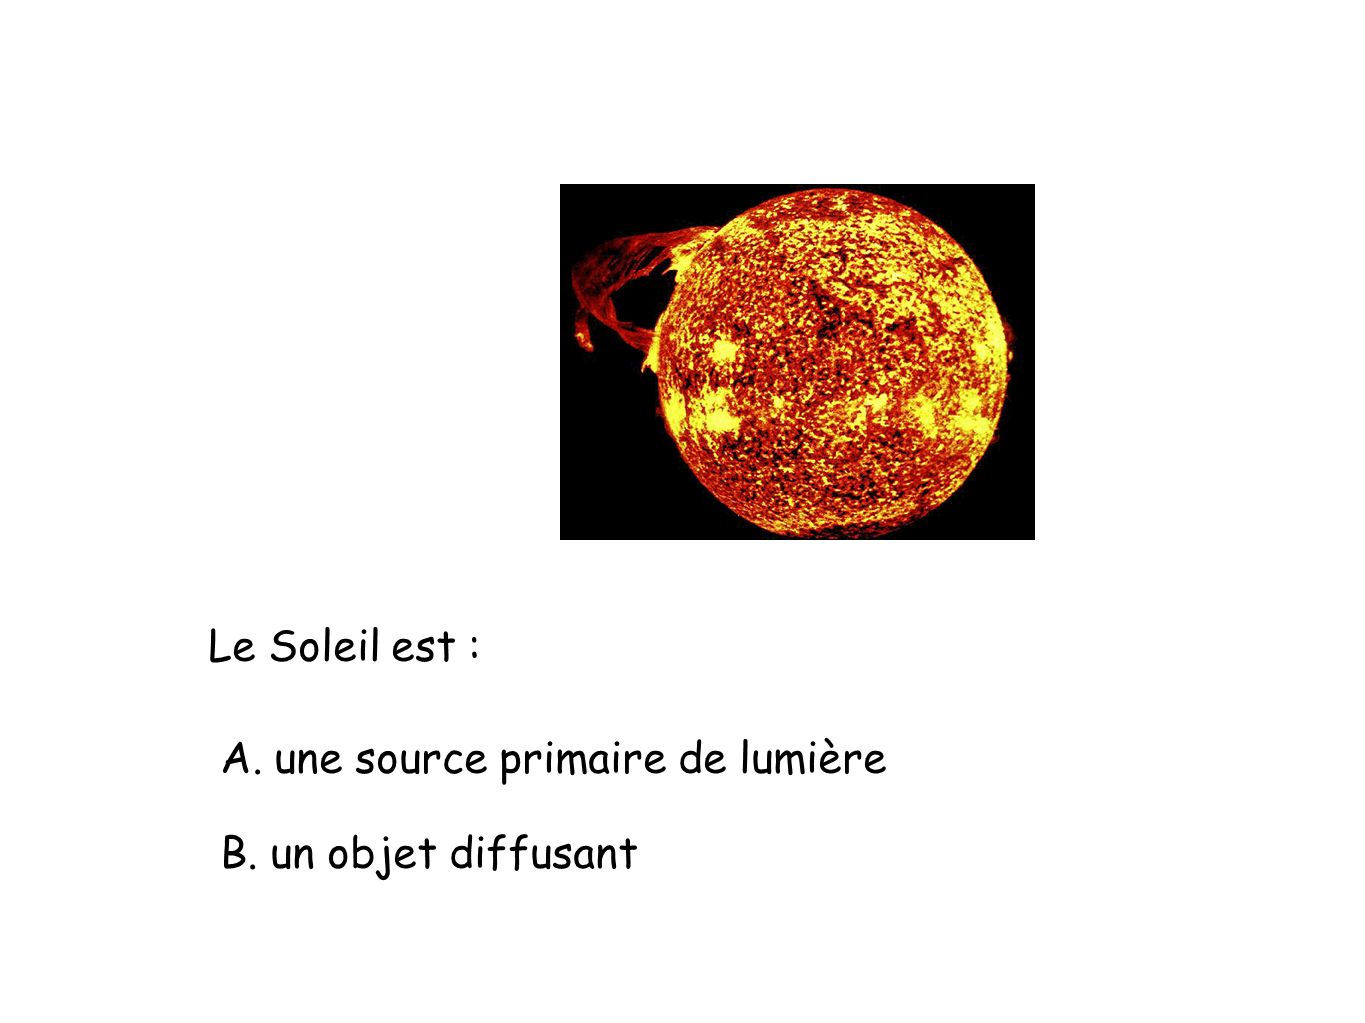 Le Soleil est : A. une source primaire de lumière B. un objet diffusant